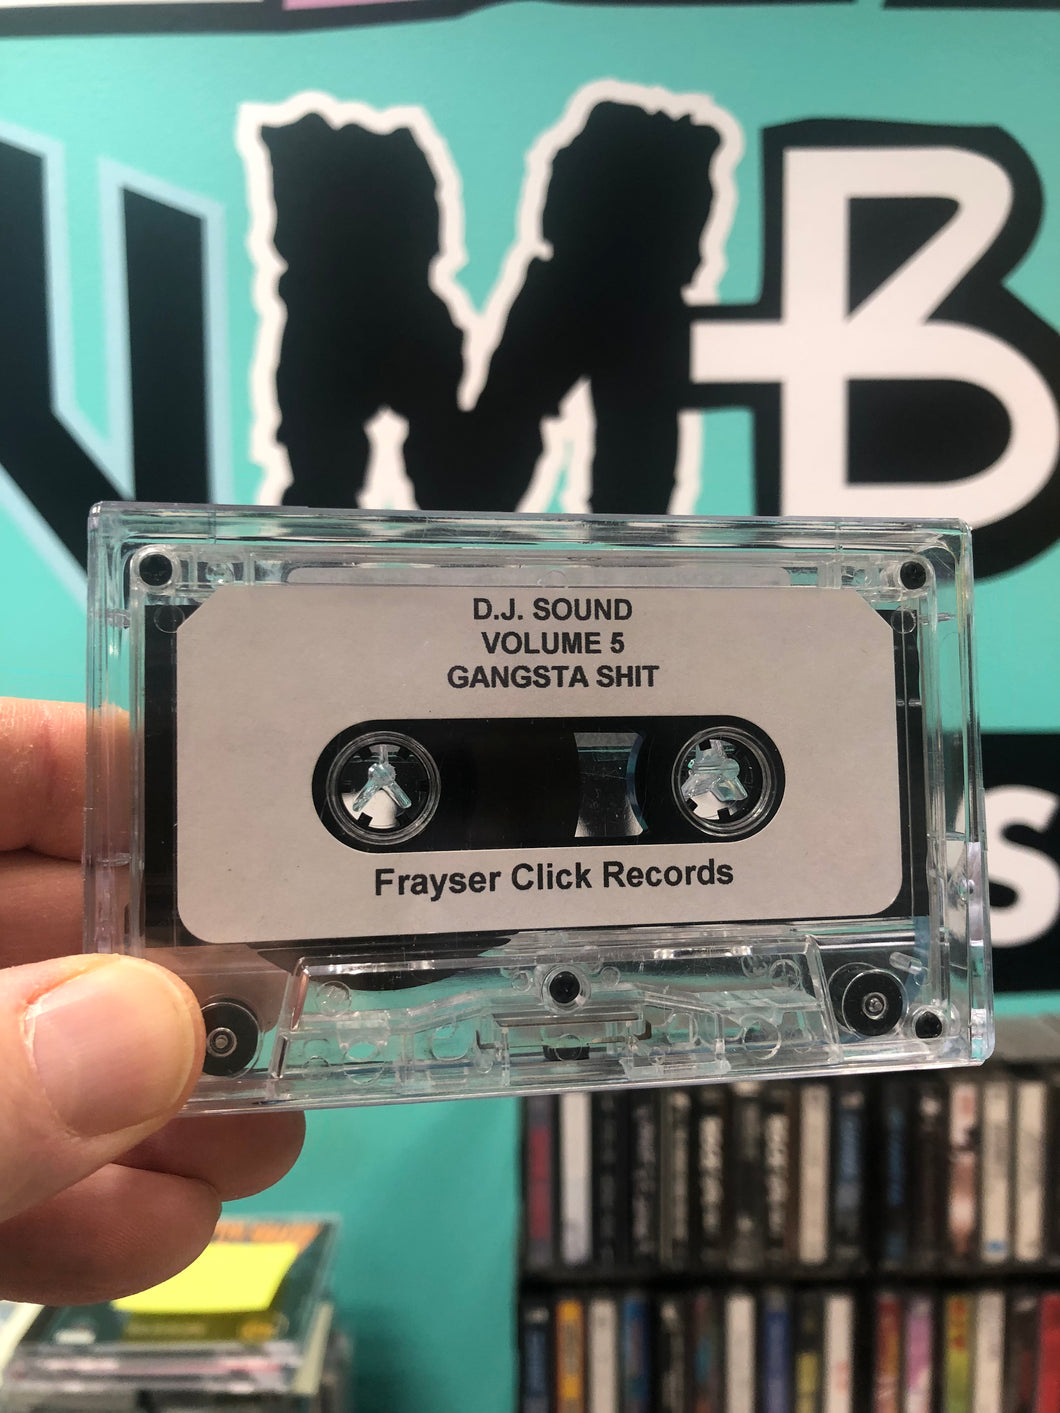 D.J. Sound: Volume 5 Gangsta Sh**, reissue 1993?